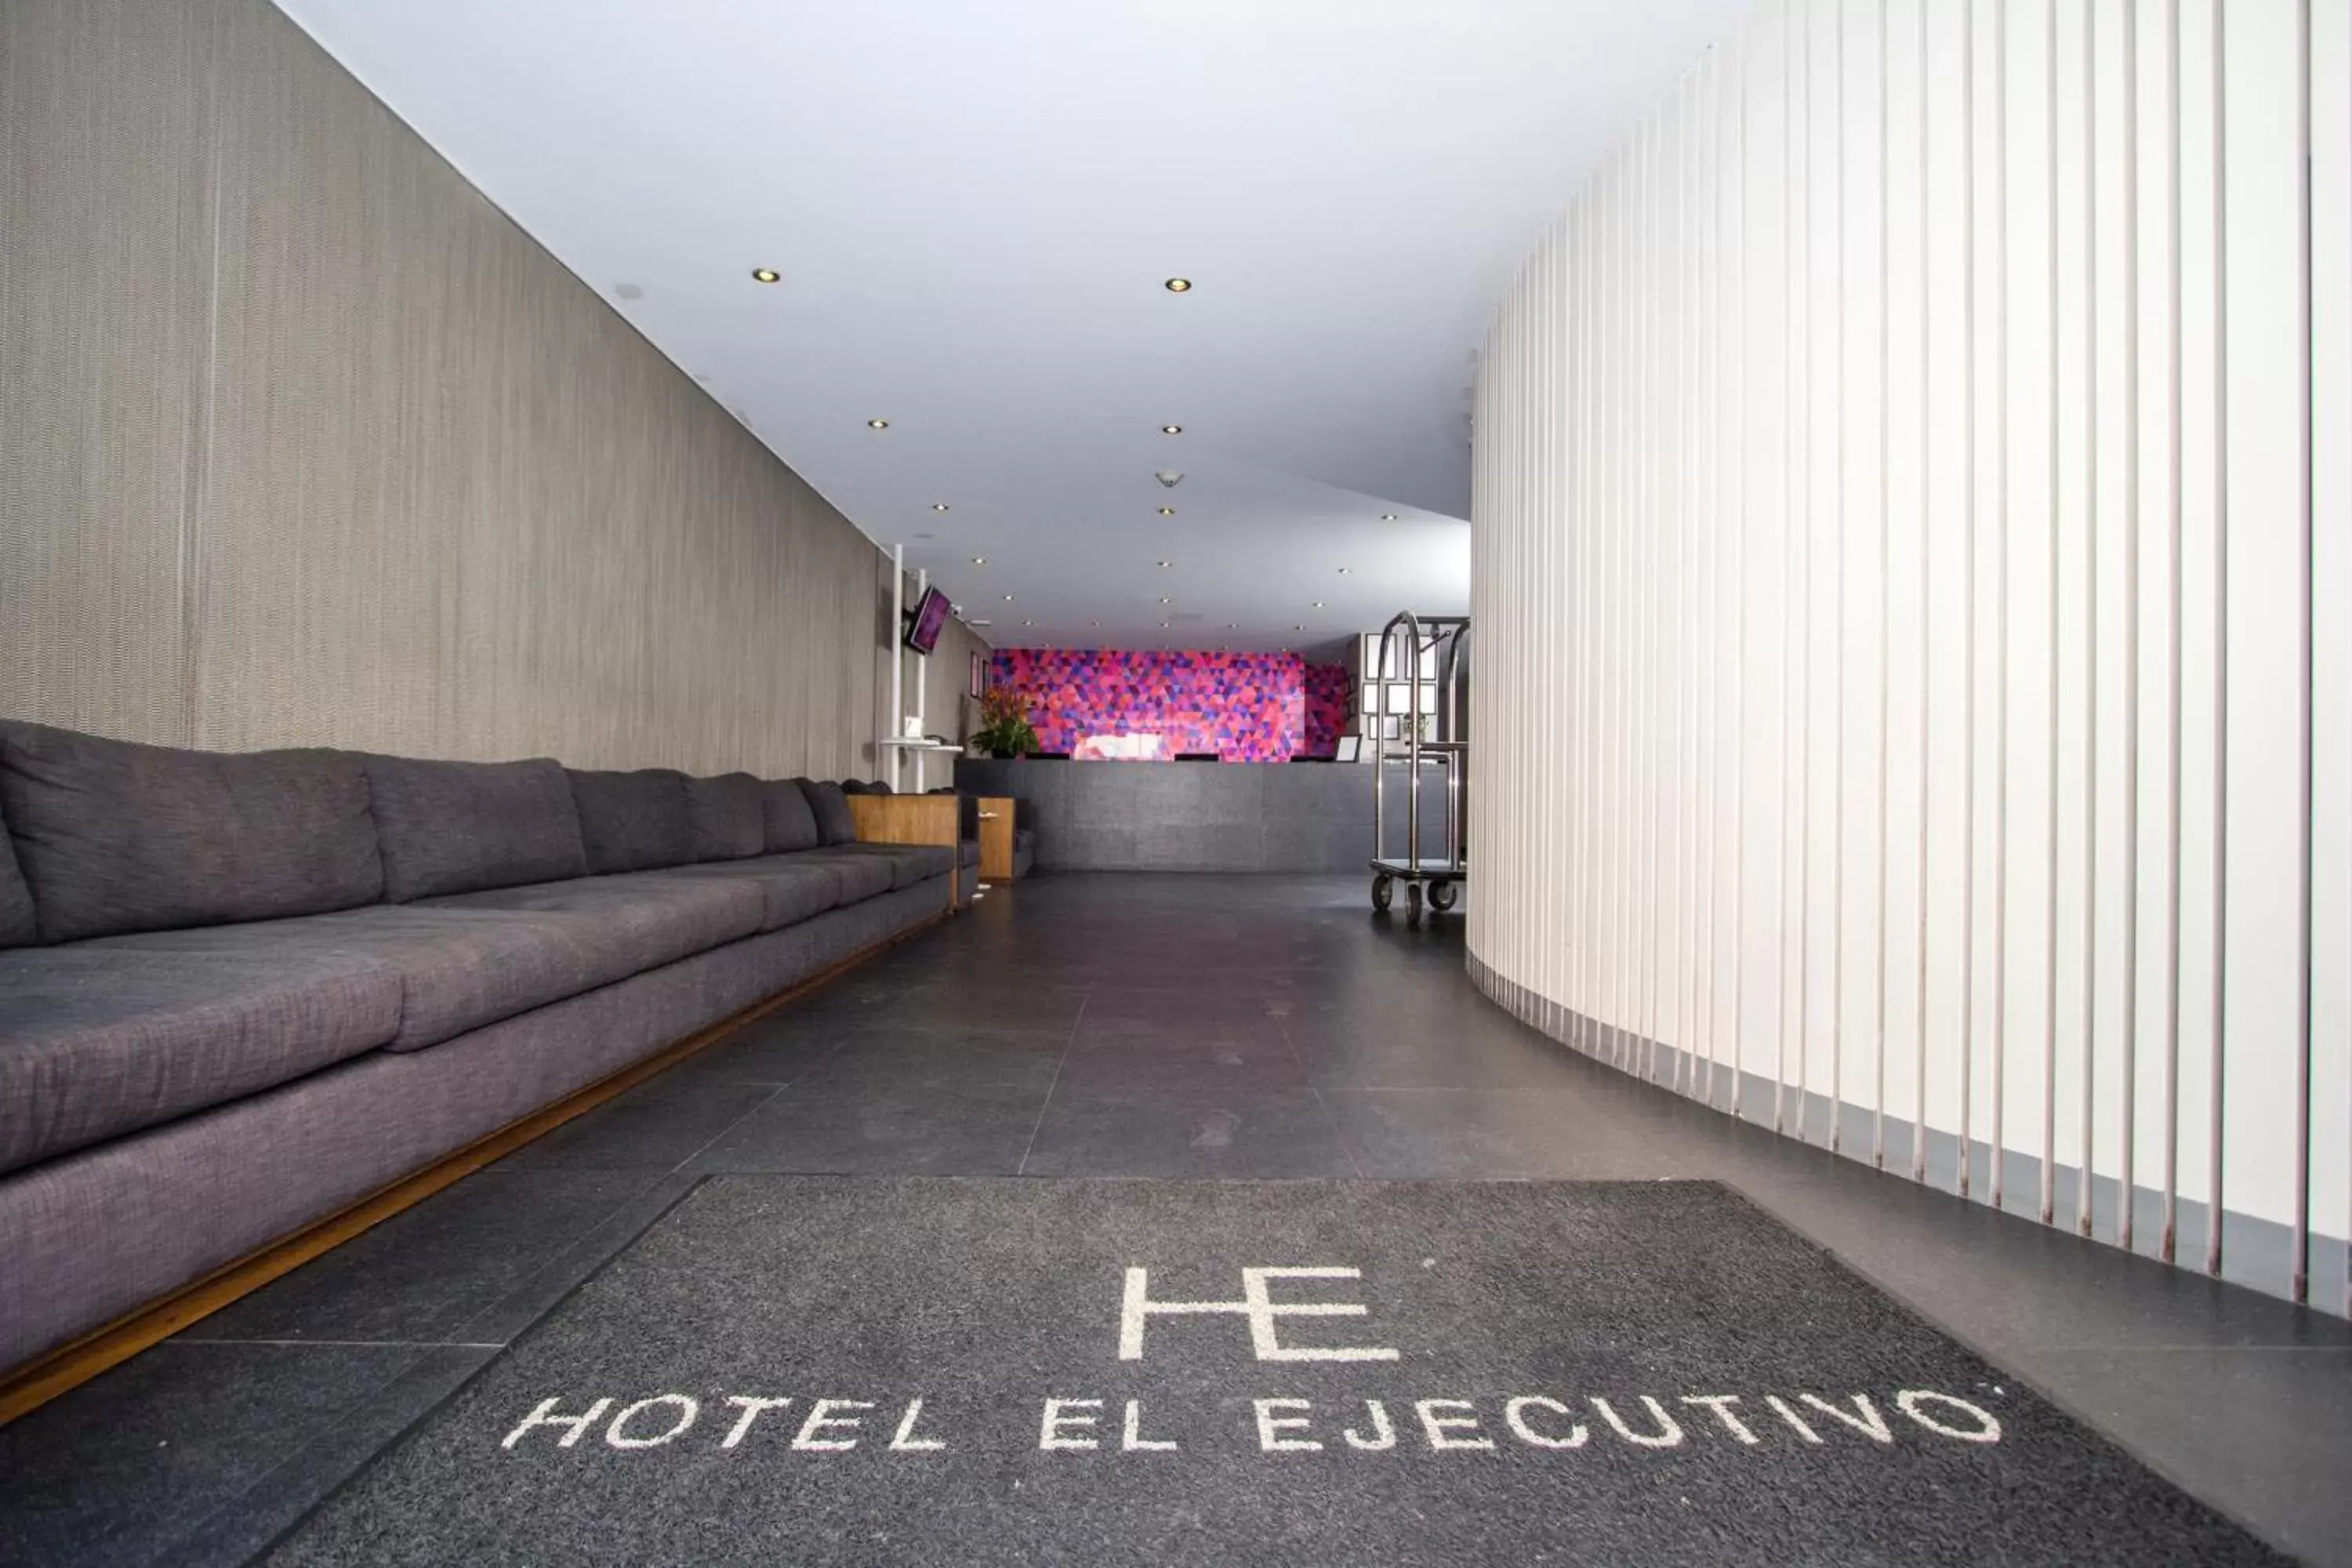 Lobby or reception in Hotel El Ejecutivo by Reforma Avenue